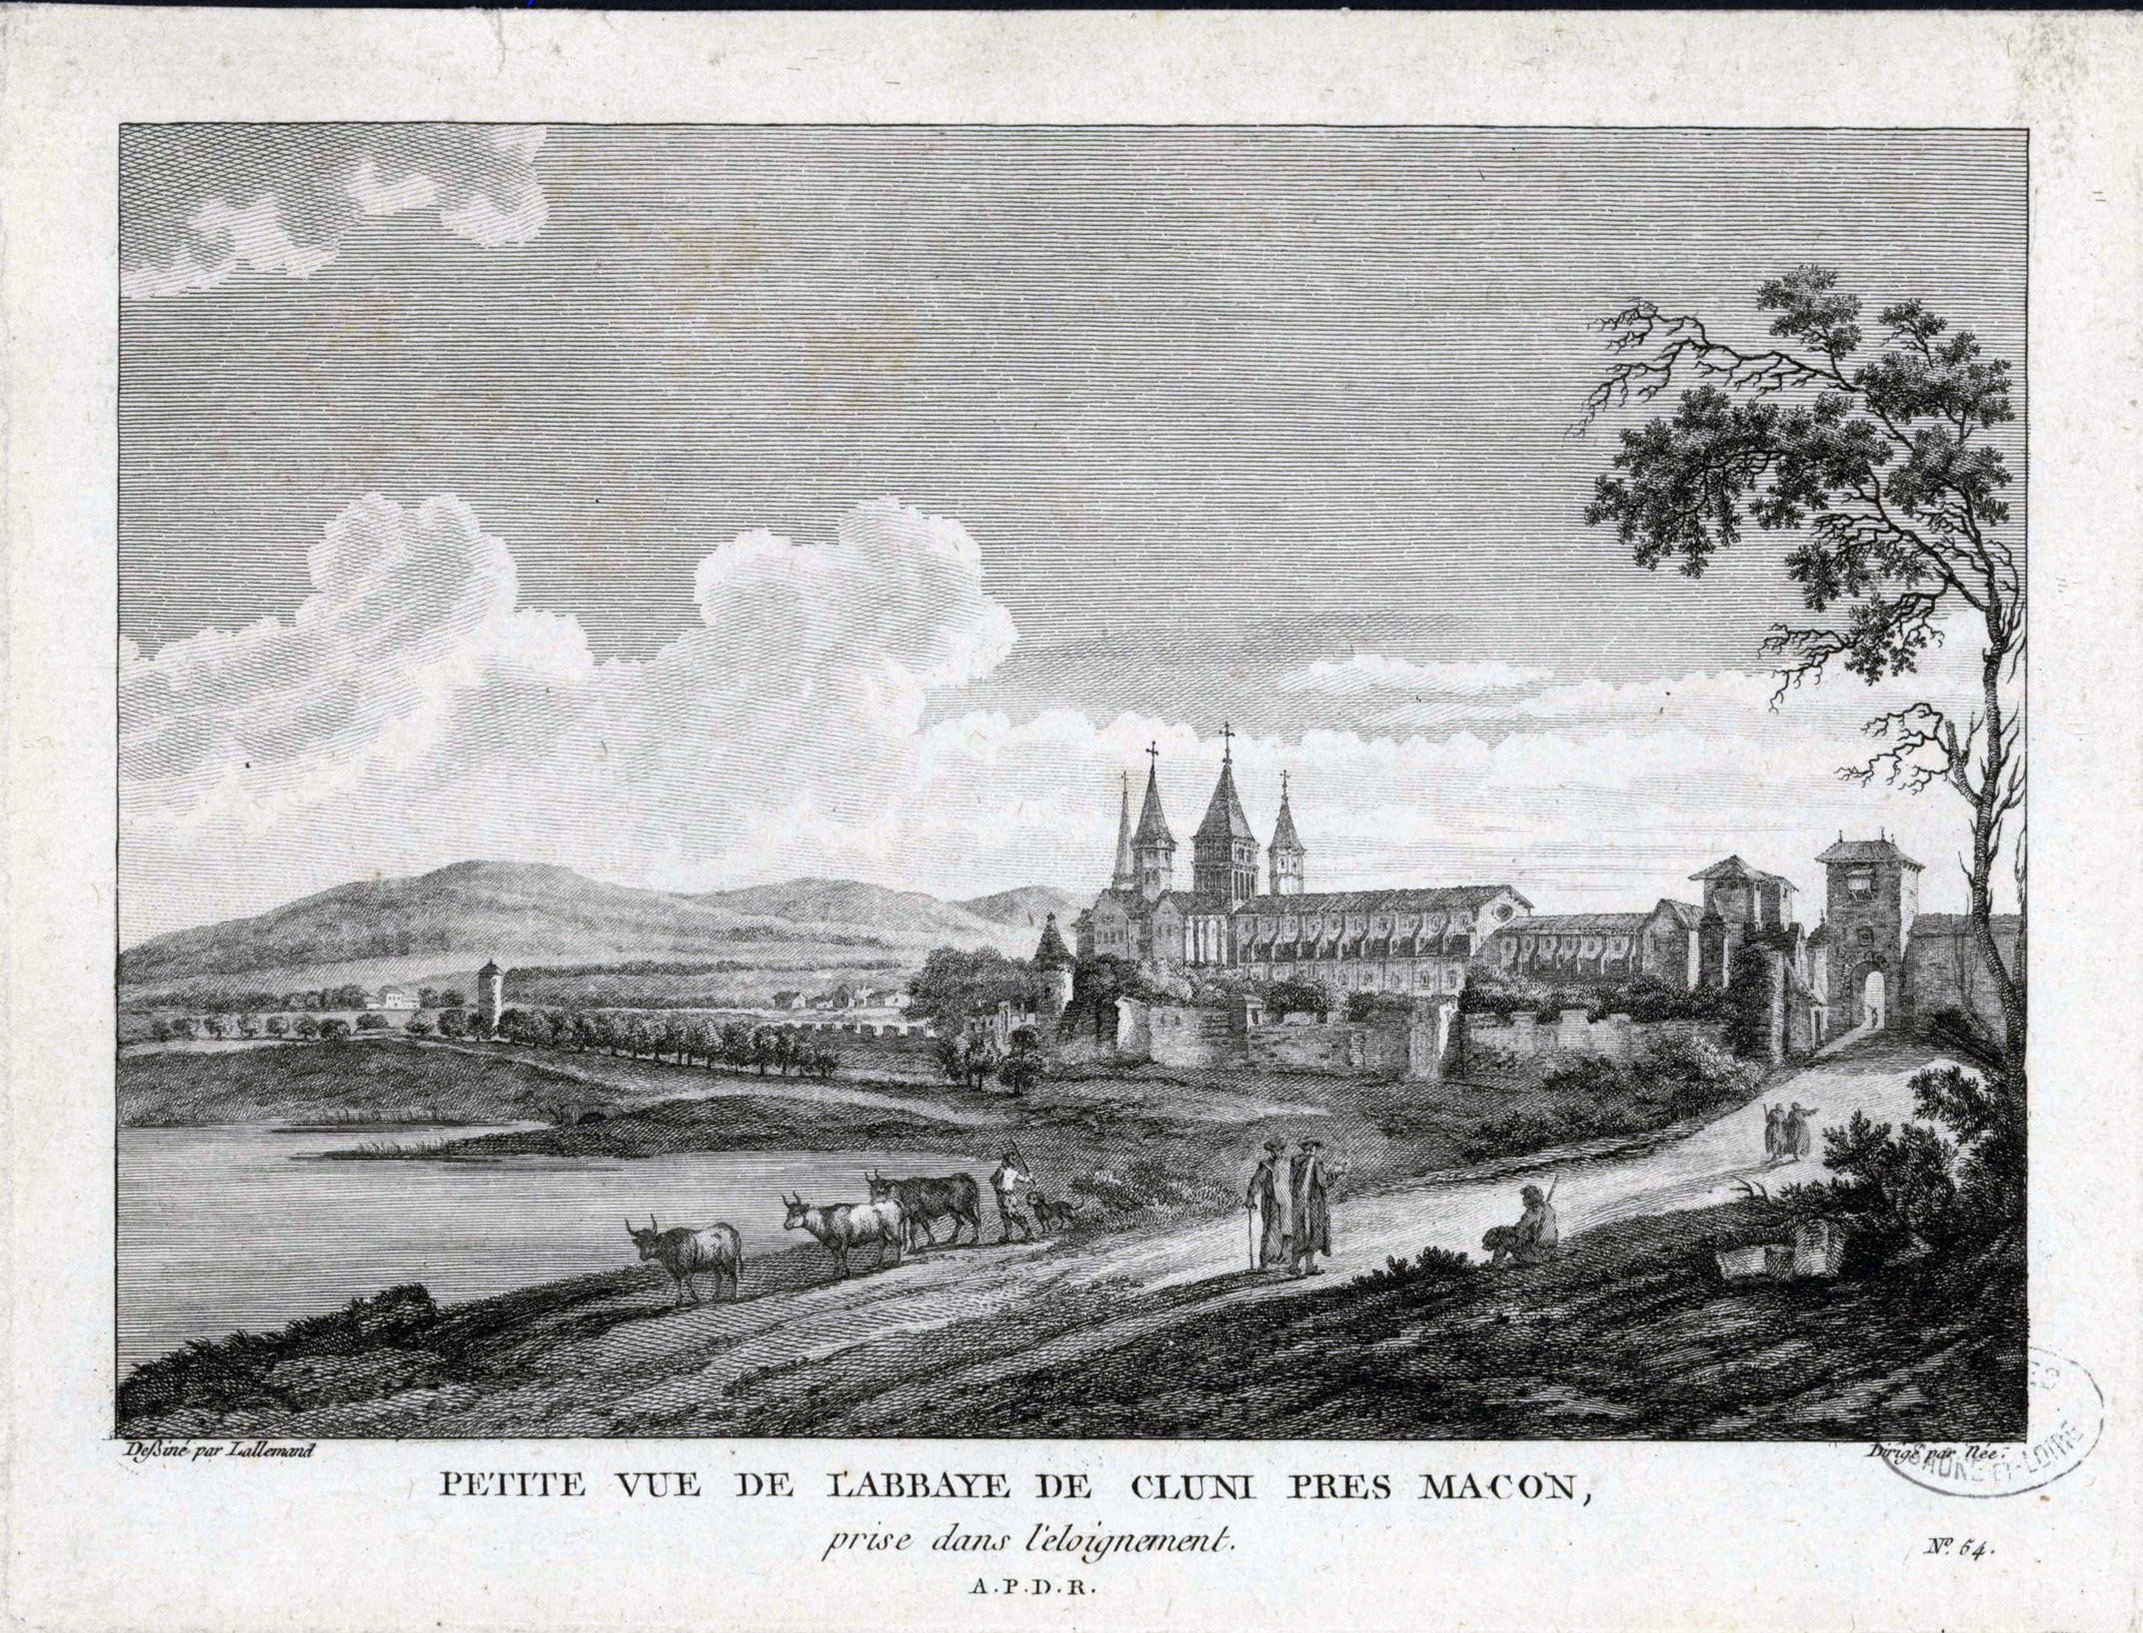 J.B. Lallemand, Petite vue de Cluny, XVIIIe siècle © Archives départementales de Saône-et-Loire, 2 Fi 1/138 en grand format (nouvelle fenêtre)